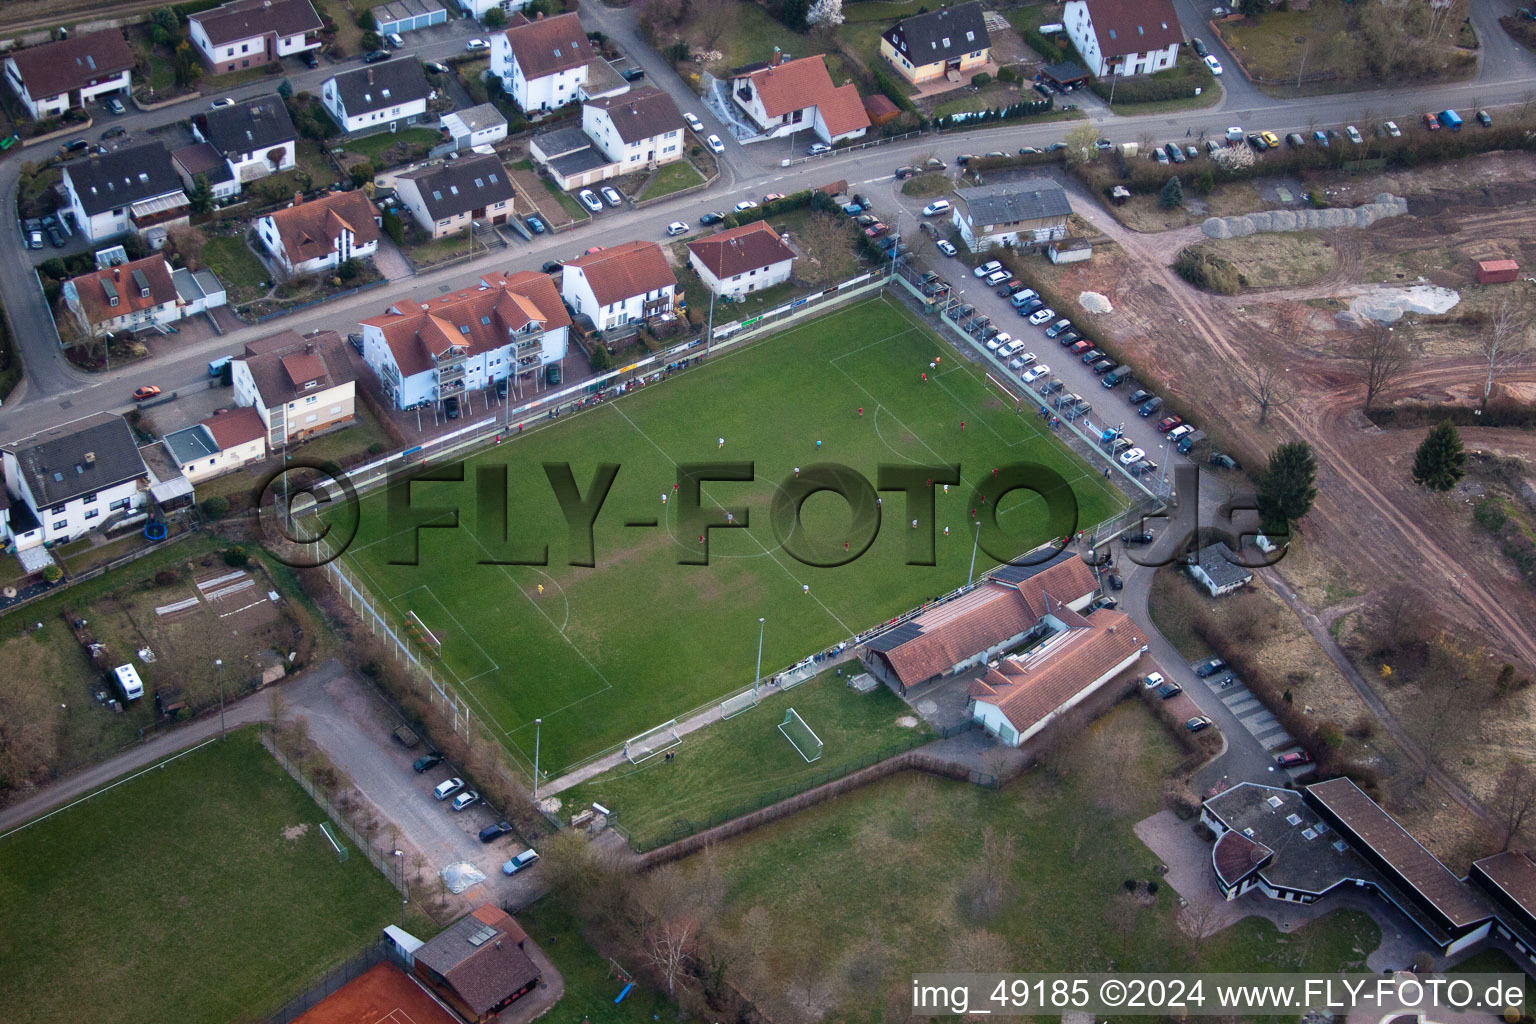 Terrains de sport à le quartier Ingenheim in Billigheim-Ingenheim dans le département Rhénanie-Palatinat, Allemagne depuis l'avion